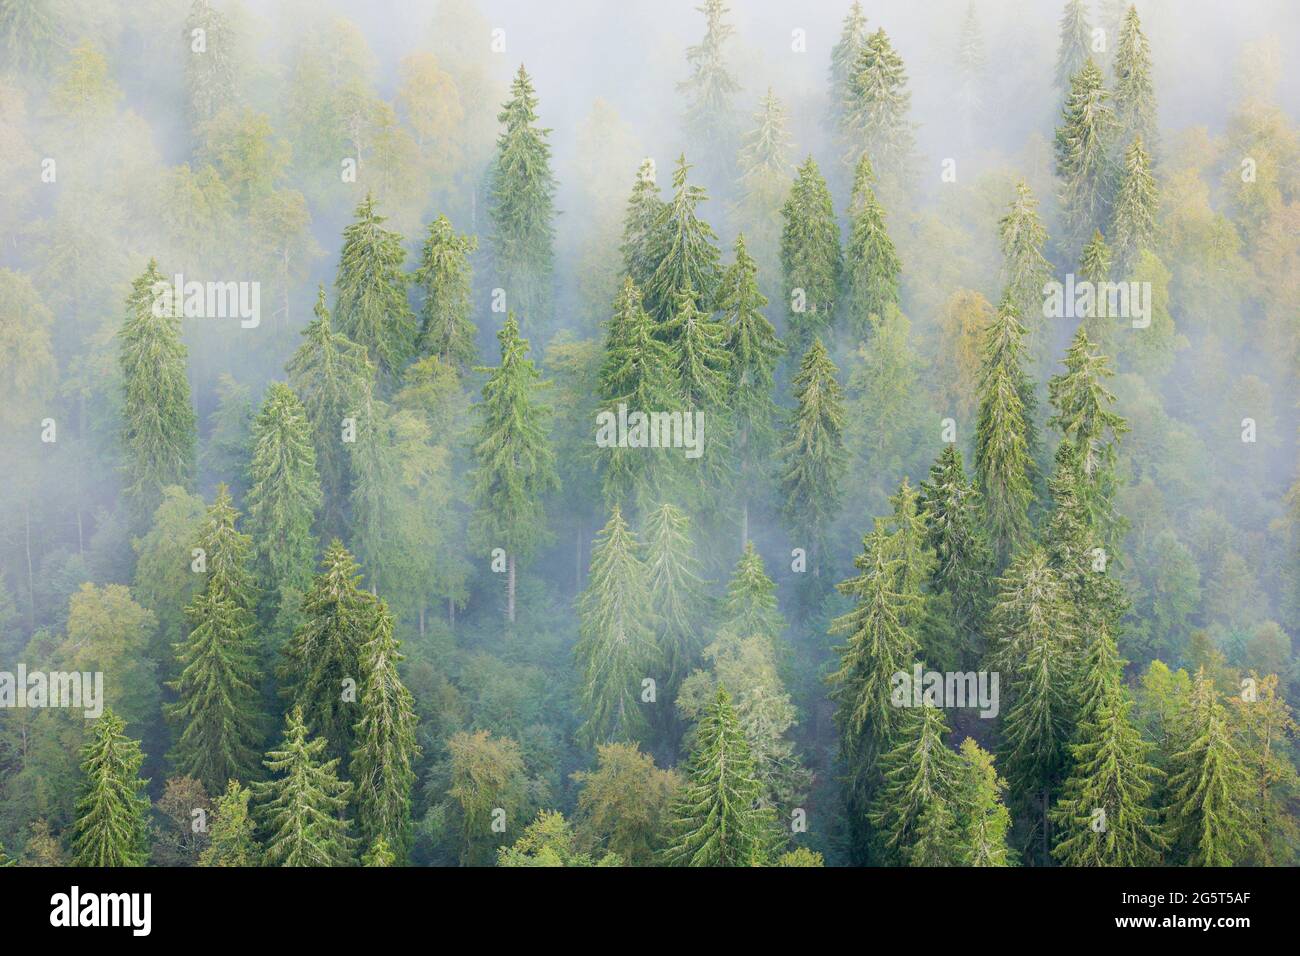 Norway spruce (Picea abies), spruce forest in mist, Switzerland, Neuenburg Stock Photo